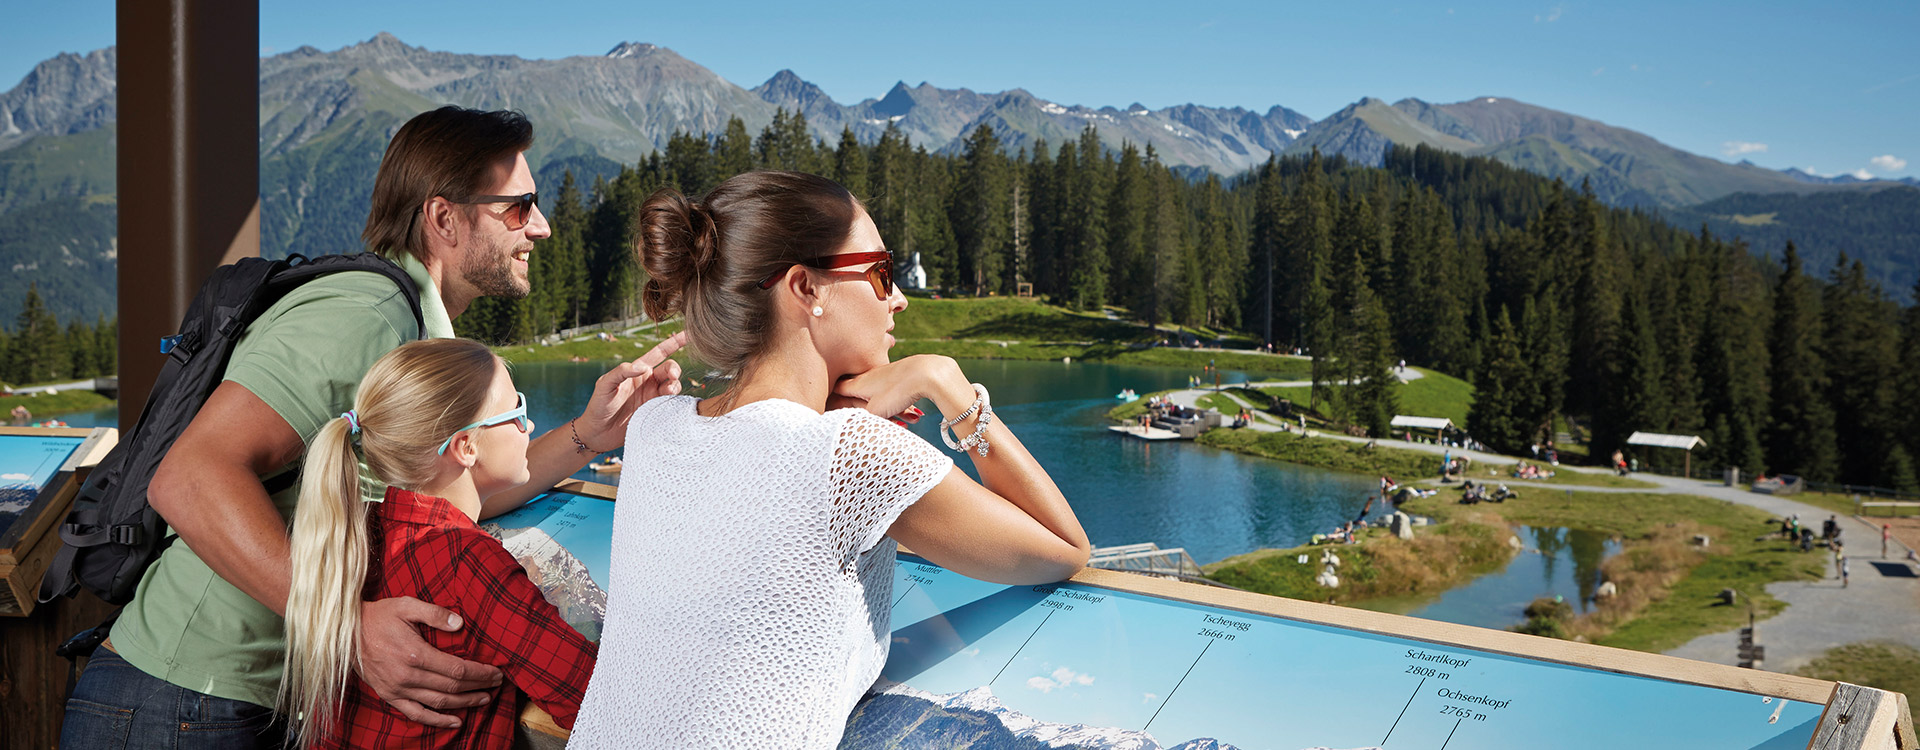 Hotel Puint Wellnesshotel Naturhotel Serfaus Fiss Ladis Tirol Sommer Ausflugsziele Sehenswuerdigkeiten Region 1920x750 13